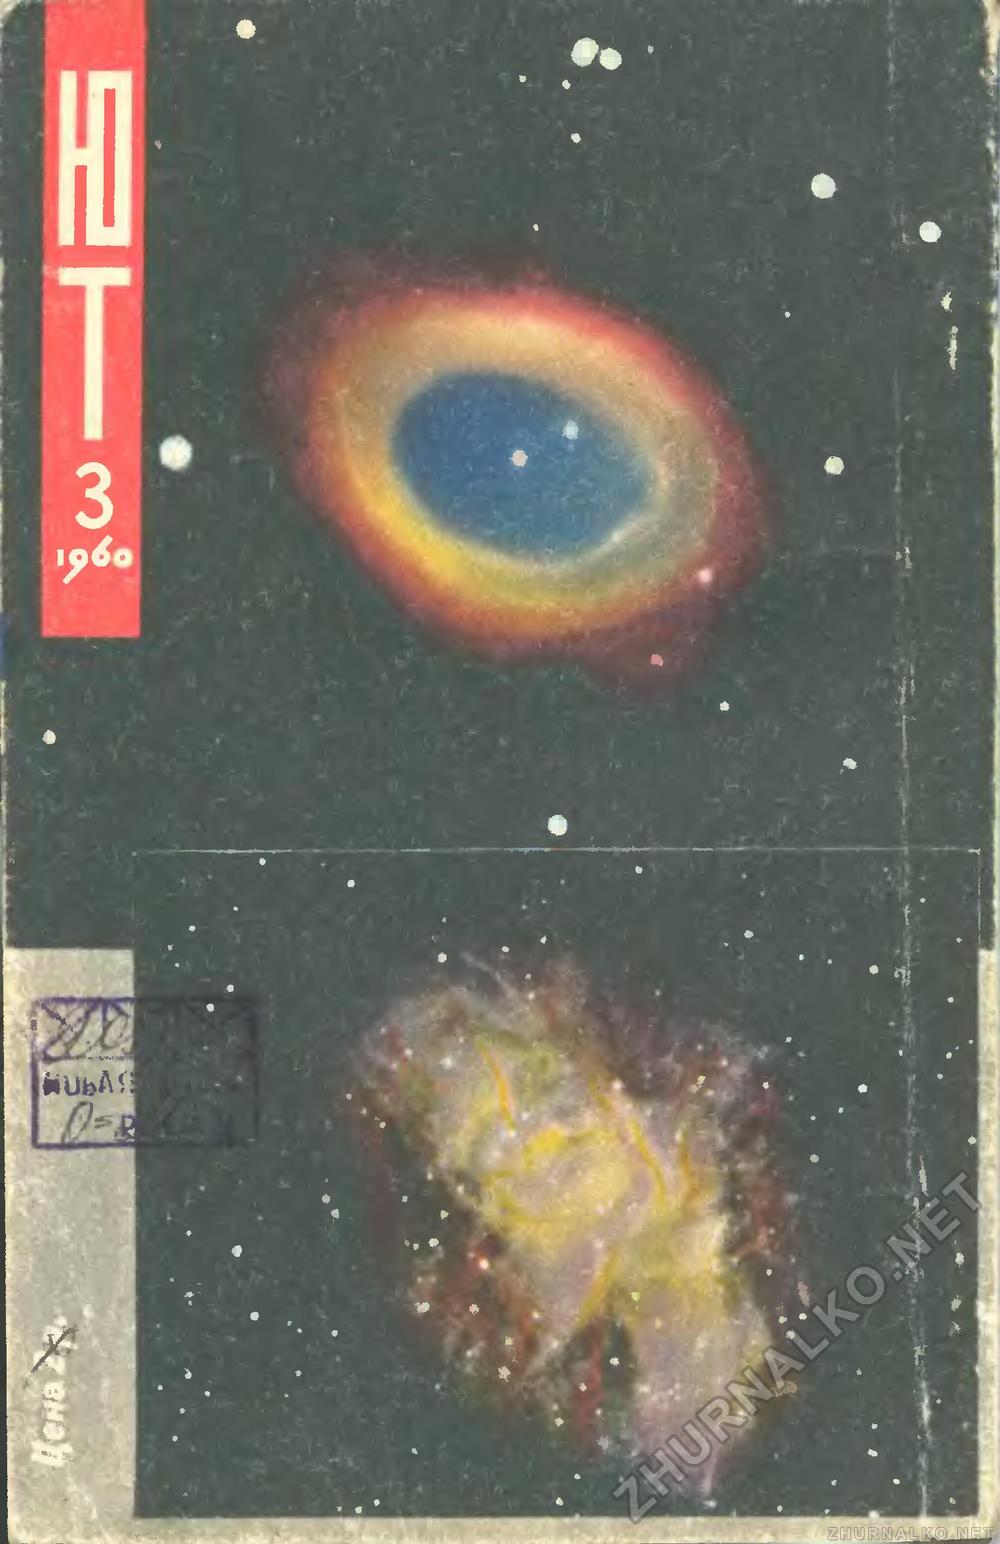   1960-03,  97